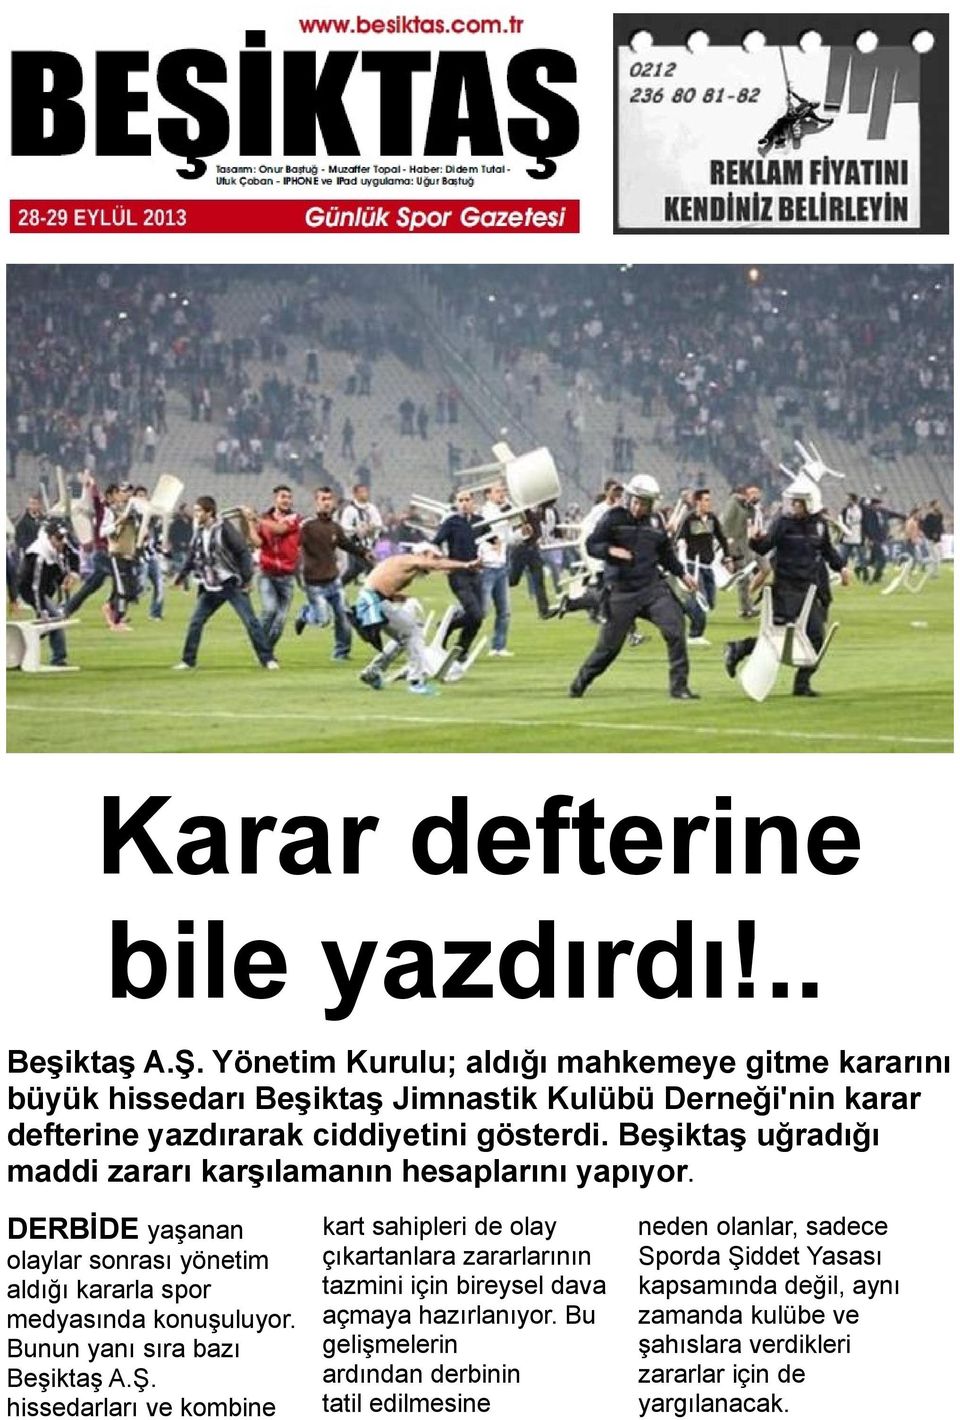 Beşiktaş uğradığı maddi zararı karşılamanın hesaplarını yapıyor. DERBİDE yaşanan olaylar sonrası yönetim aldığı kararla spor medyasında konuşuluyor.